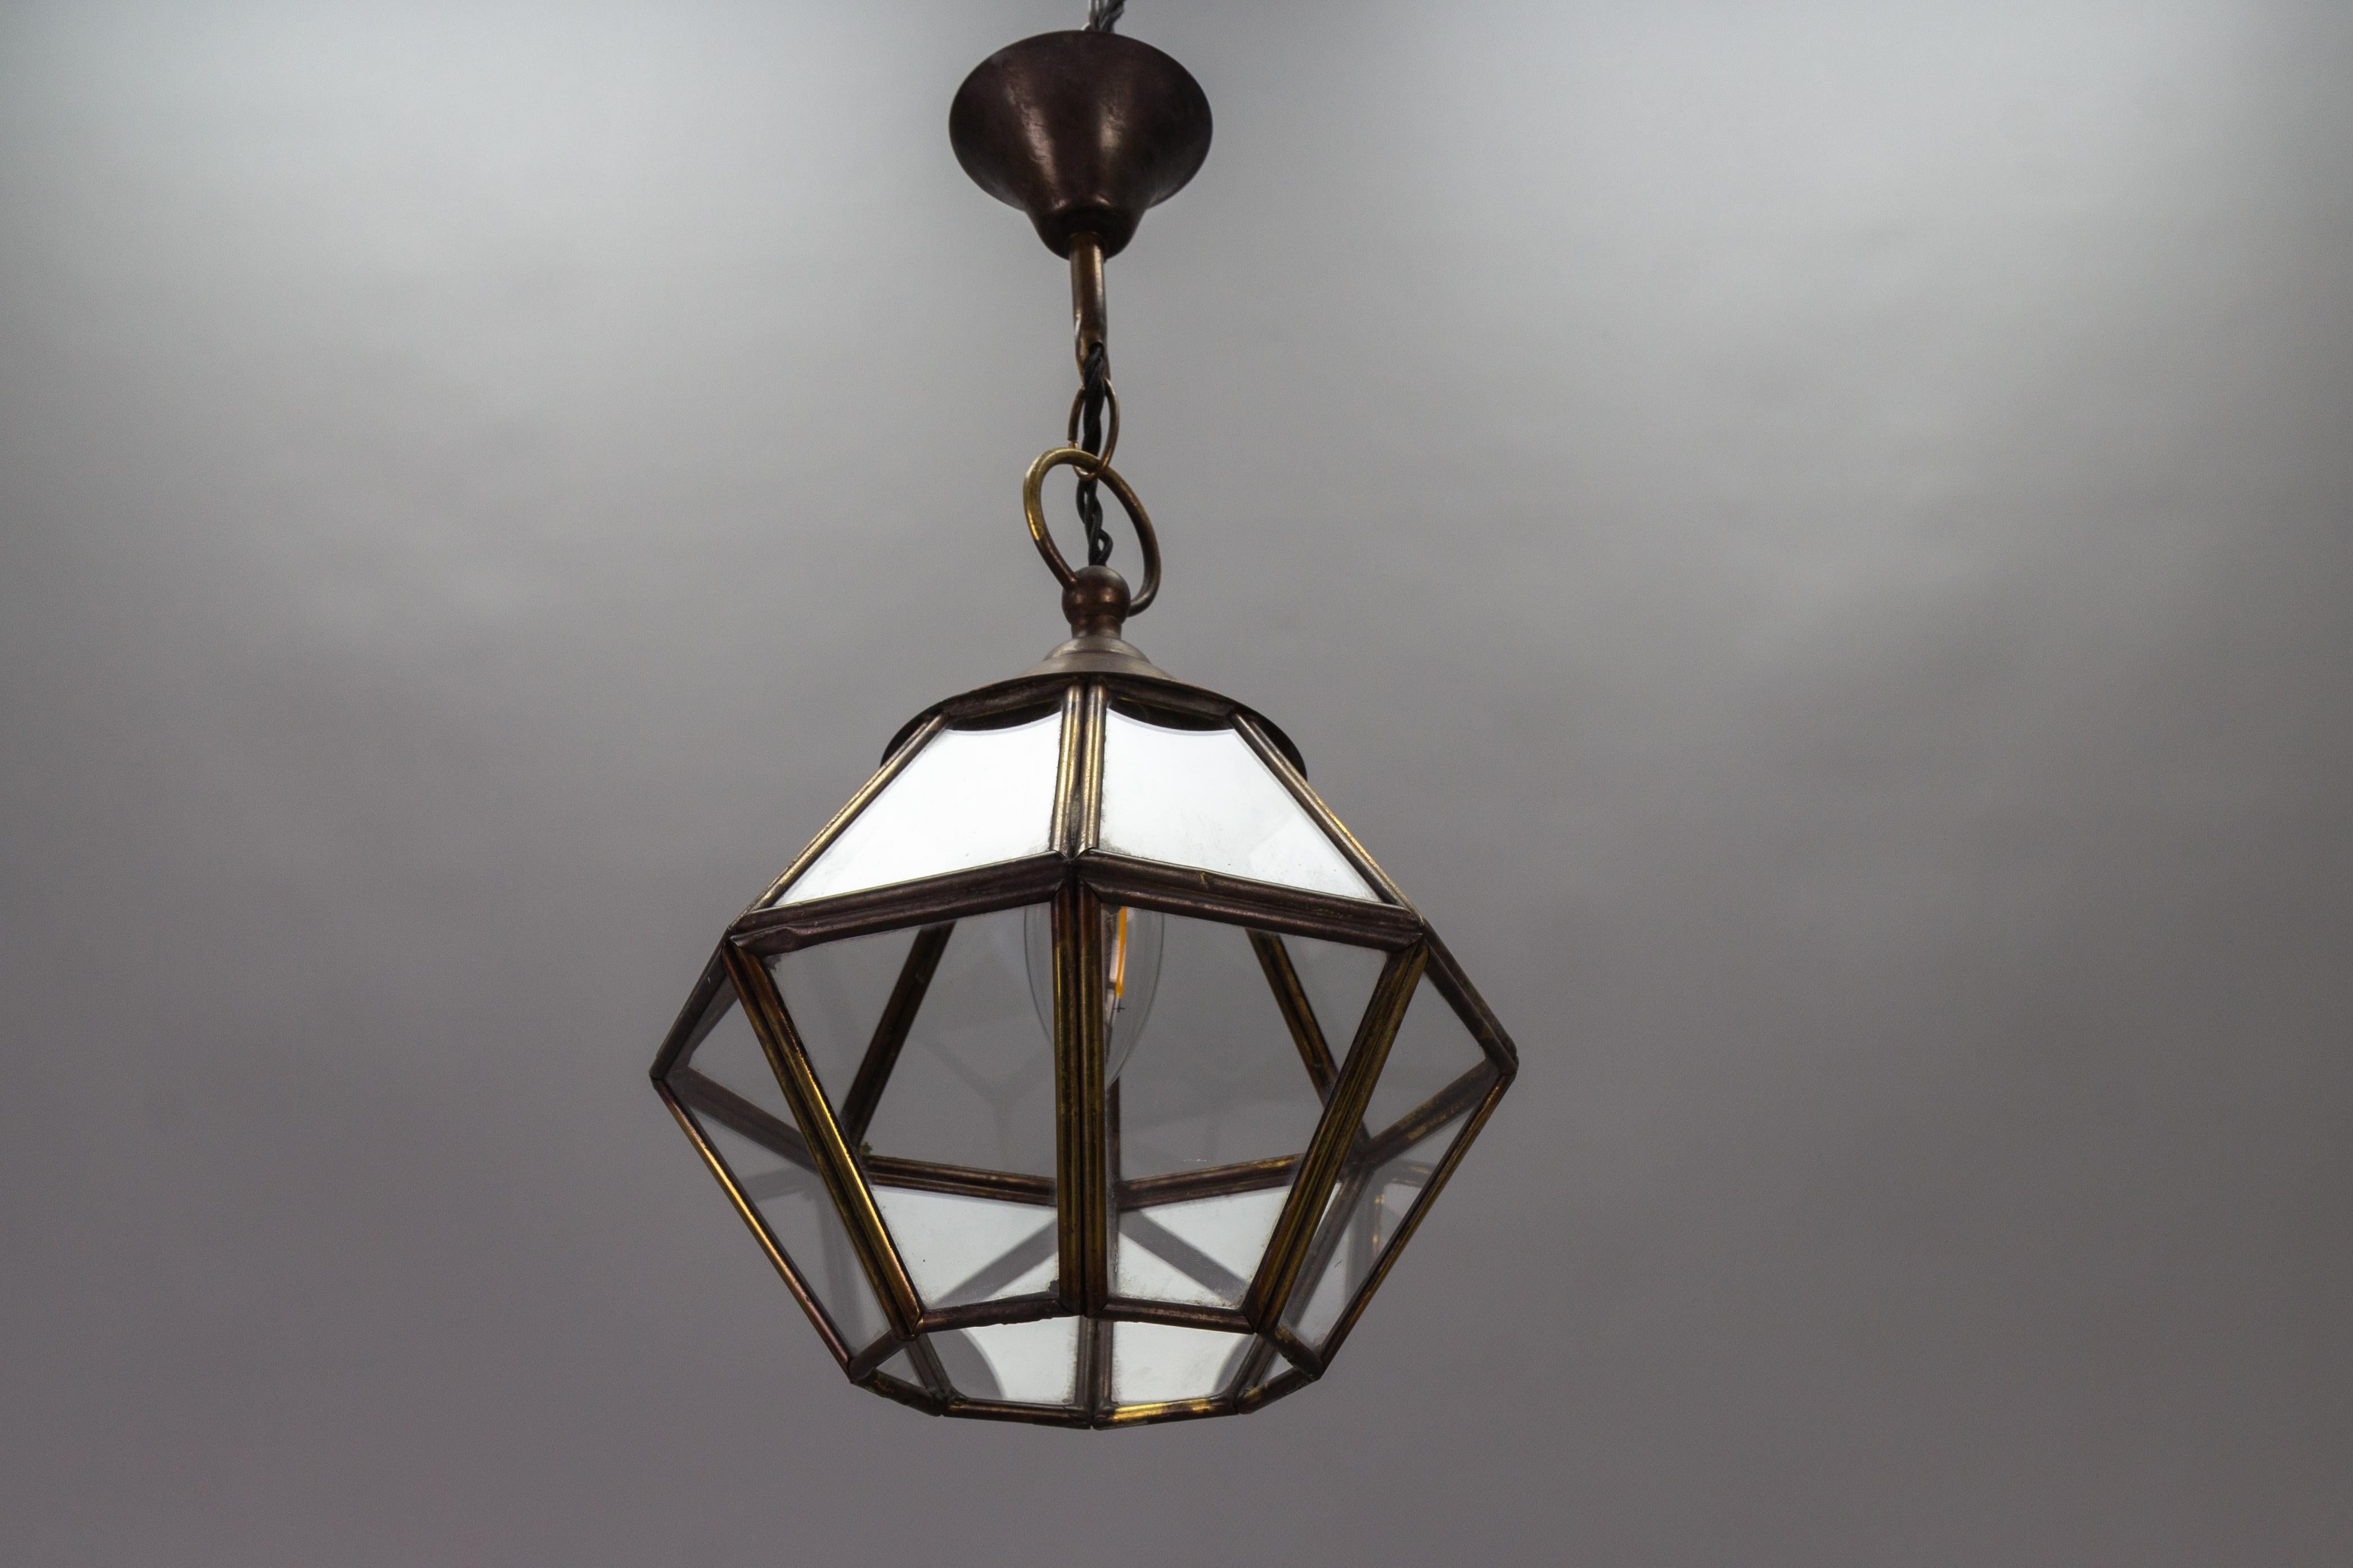 Lanterne octogonale en laiton et verre transparent, datant des années 1950.
Cette adorable et compacte lanterne suspendue vintage à une seule lumière présente un cadre octogonal en laiton avec des panneaux en verre transparent.
Une douille pour une